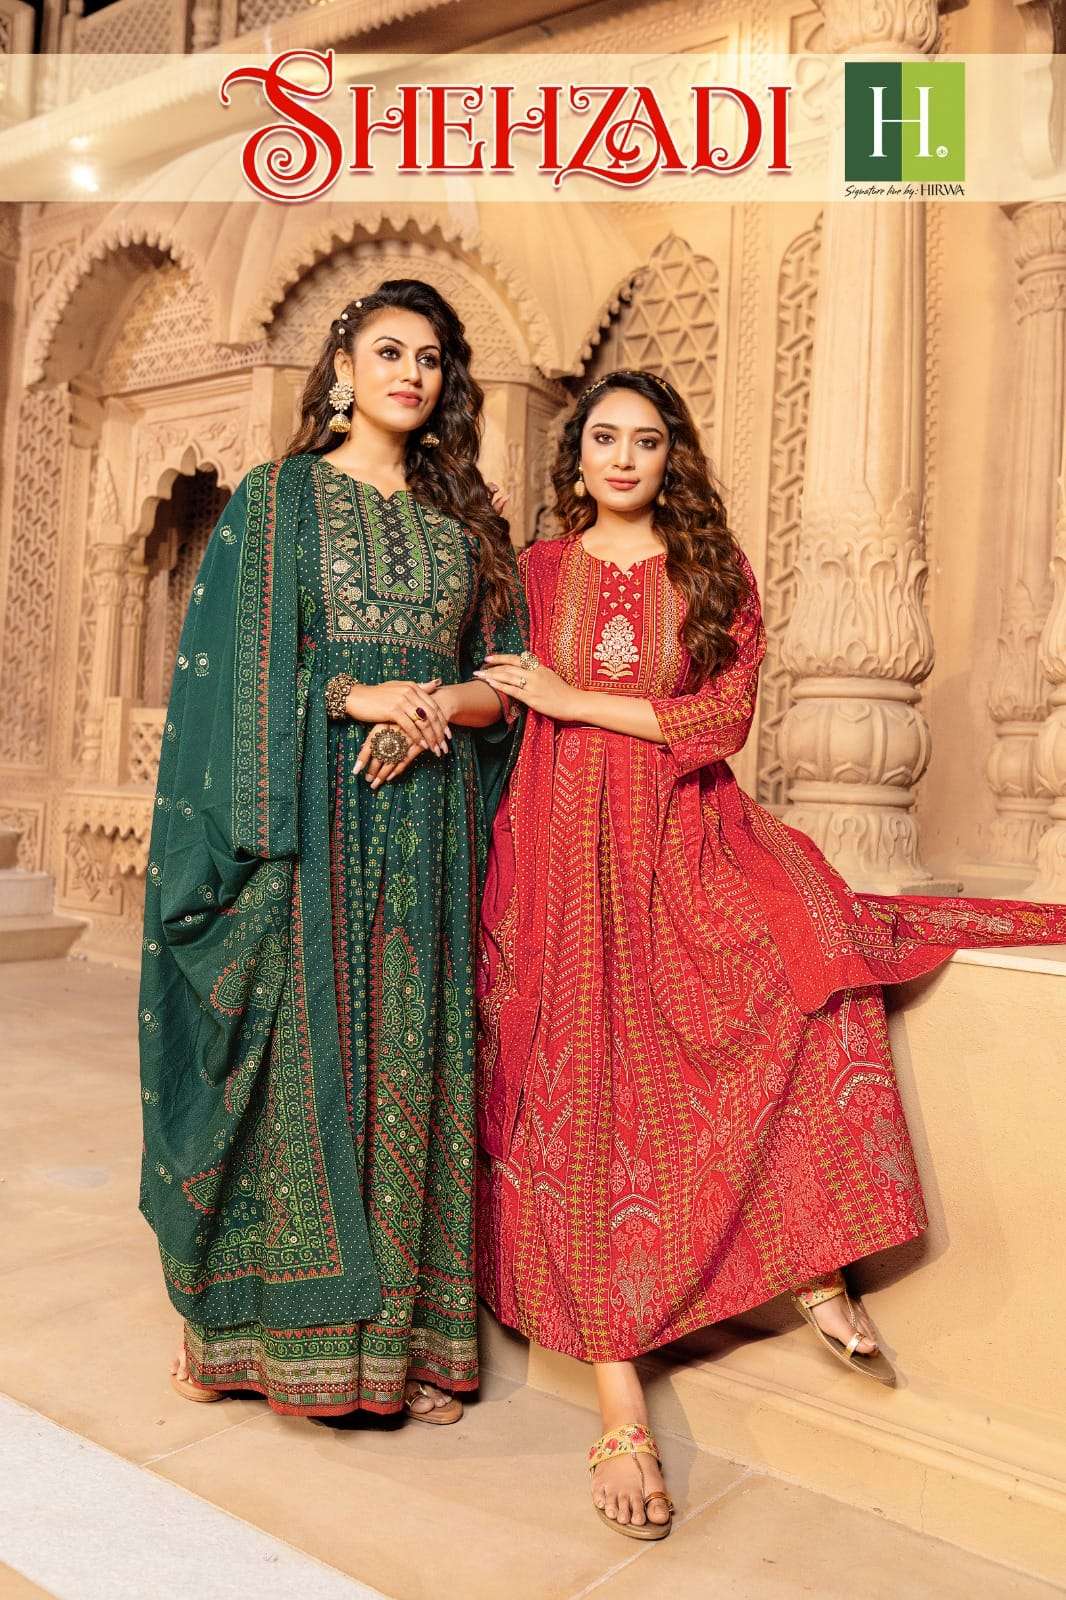 hirwa shehzadi designer gehra long gown kurtis with dupatta 